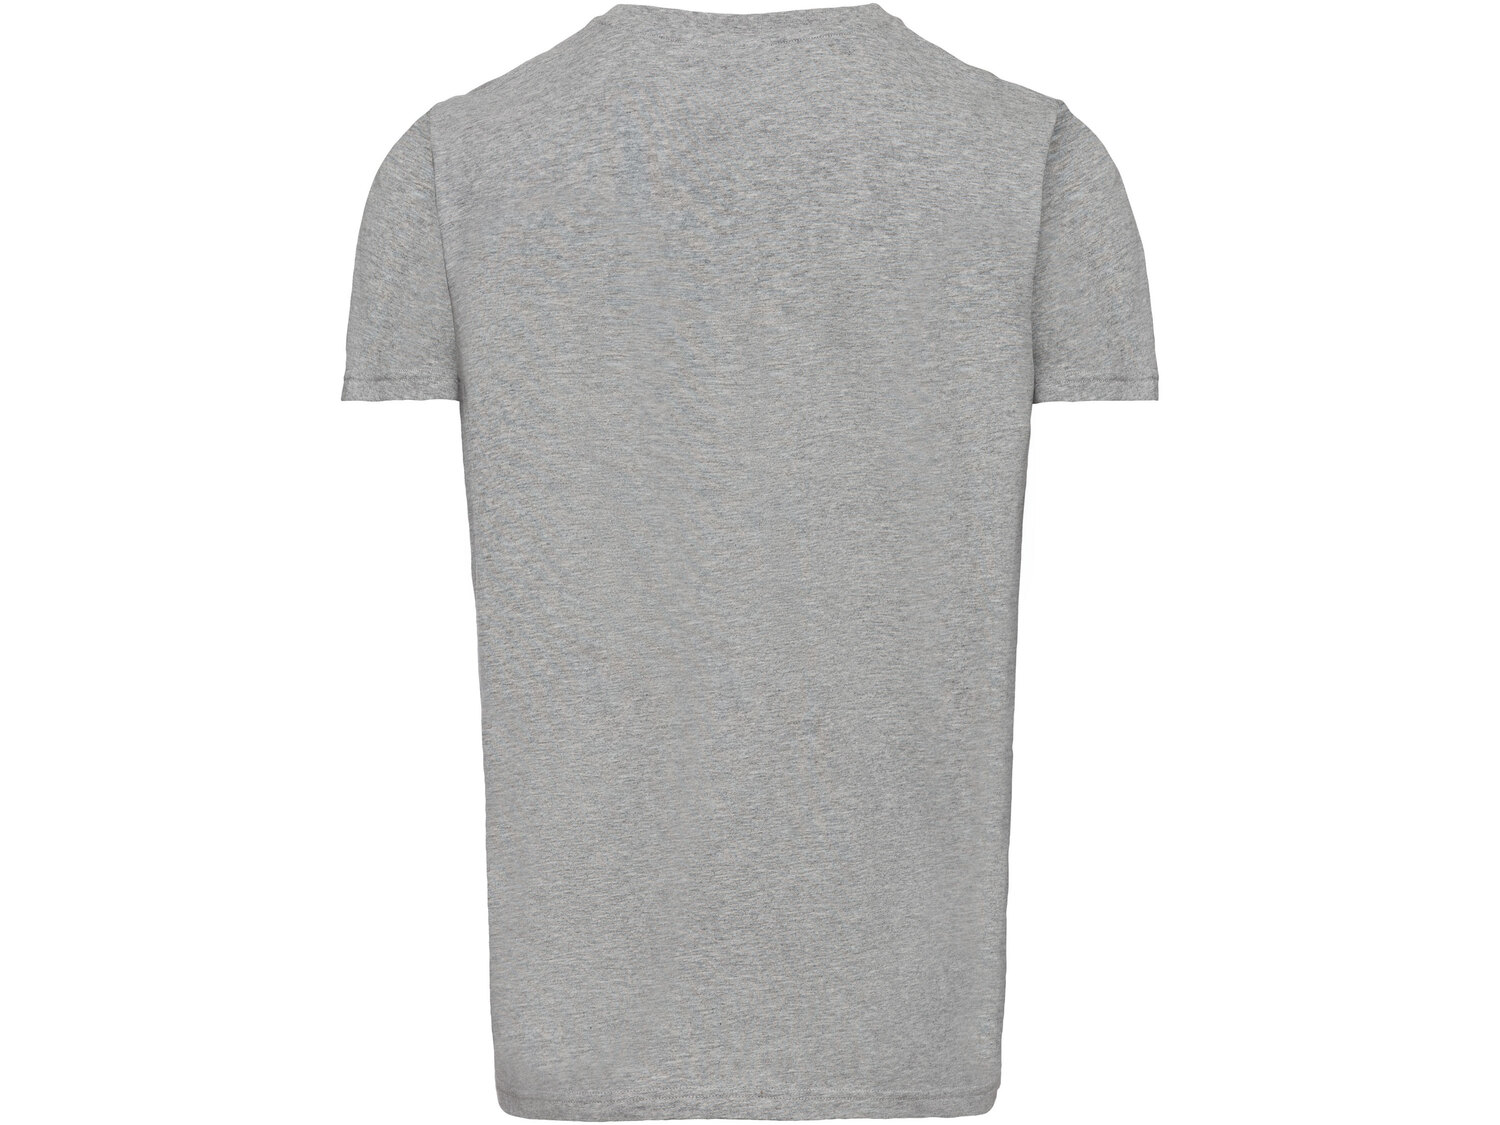 T-shirt męski z licencją Oeko Tex, cena 19,99 PLN 
- rozmiary: S-XL
- 100% bawełny
Dostępne ...